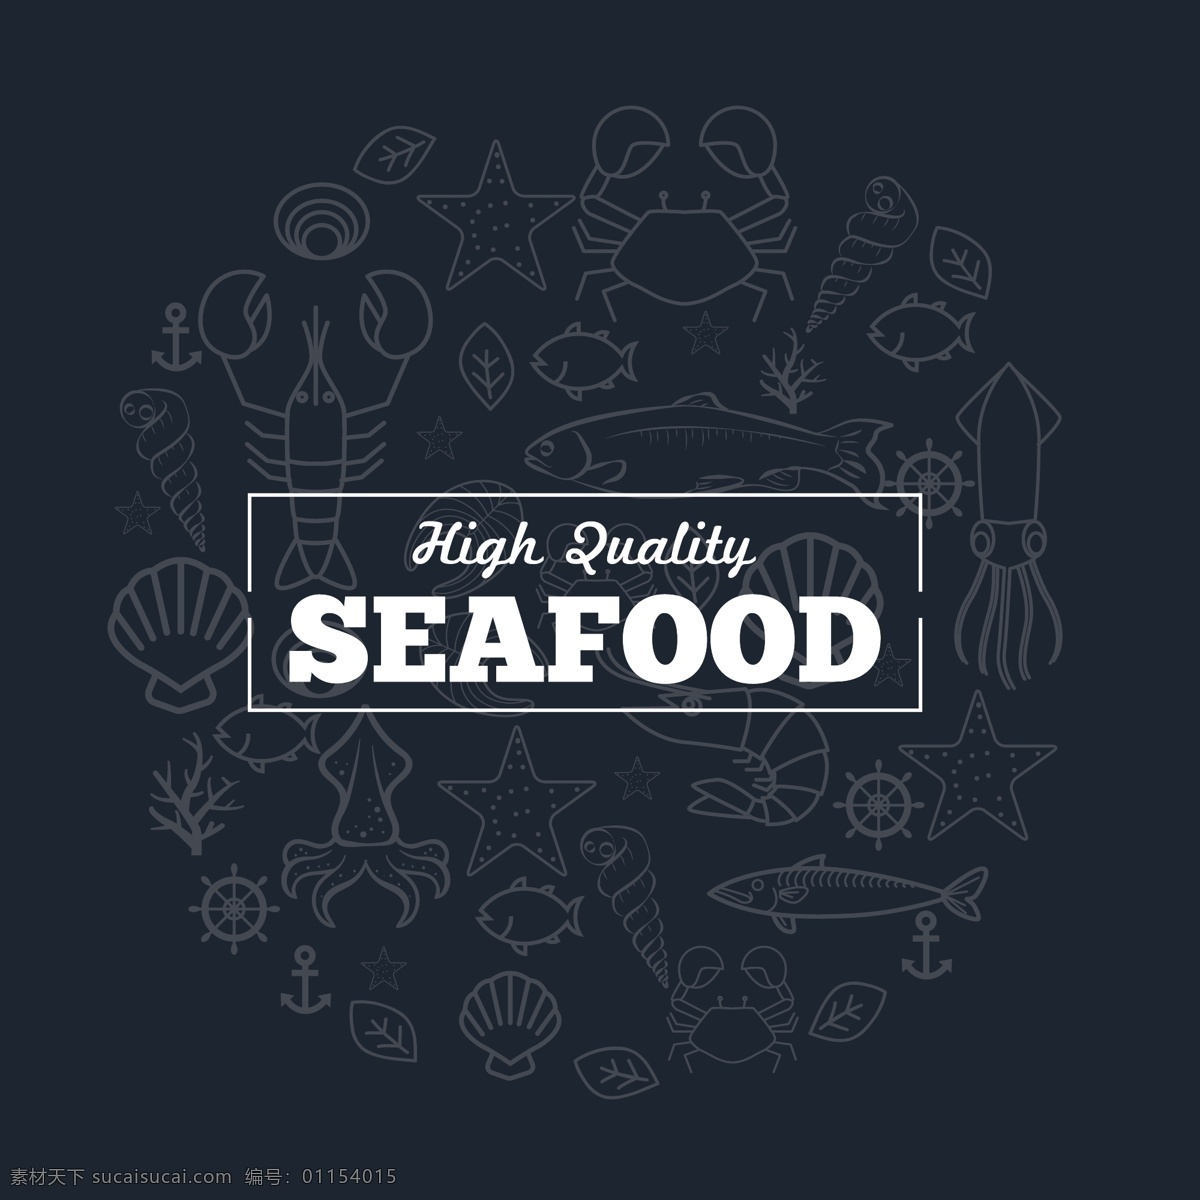 海鲜 促销 海洋生物 素描 背景 横幅 海洋 物种 矢量 线条 蓝色 蓝色背景 白字 鱼 贝壳 海星 鱿鱼 蟹 虾